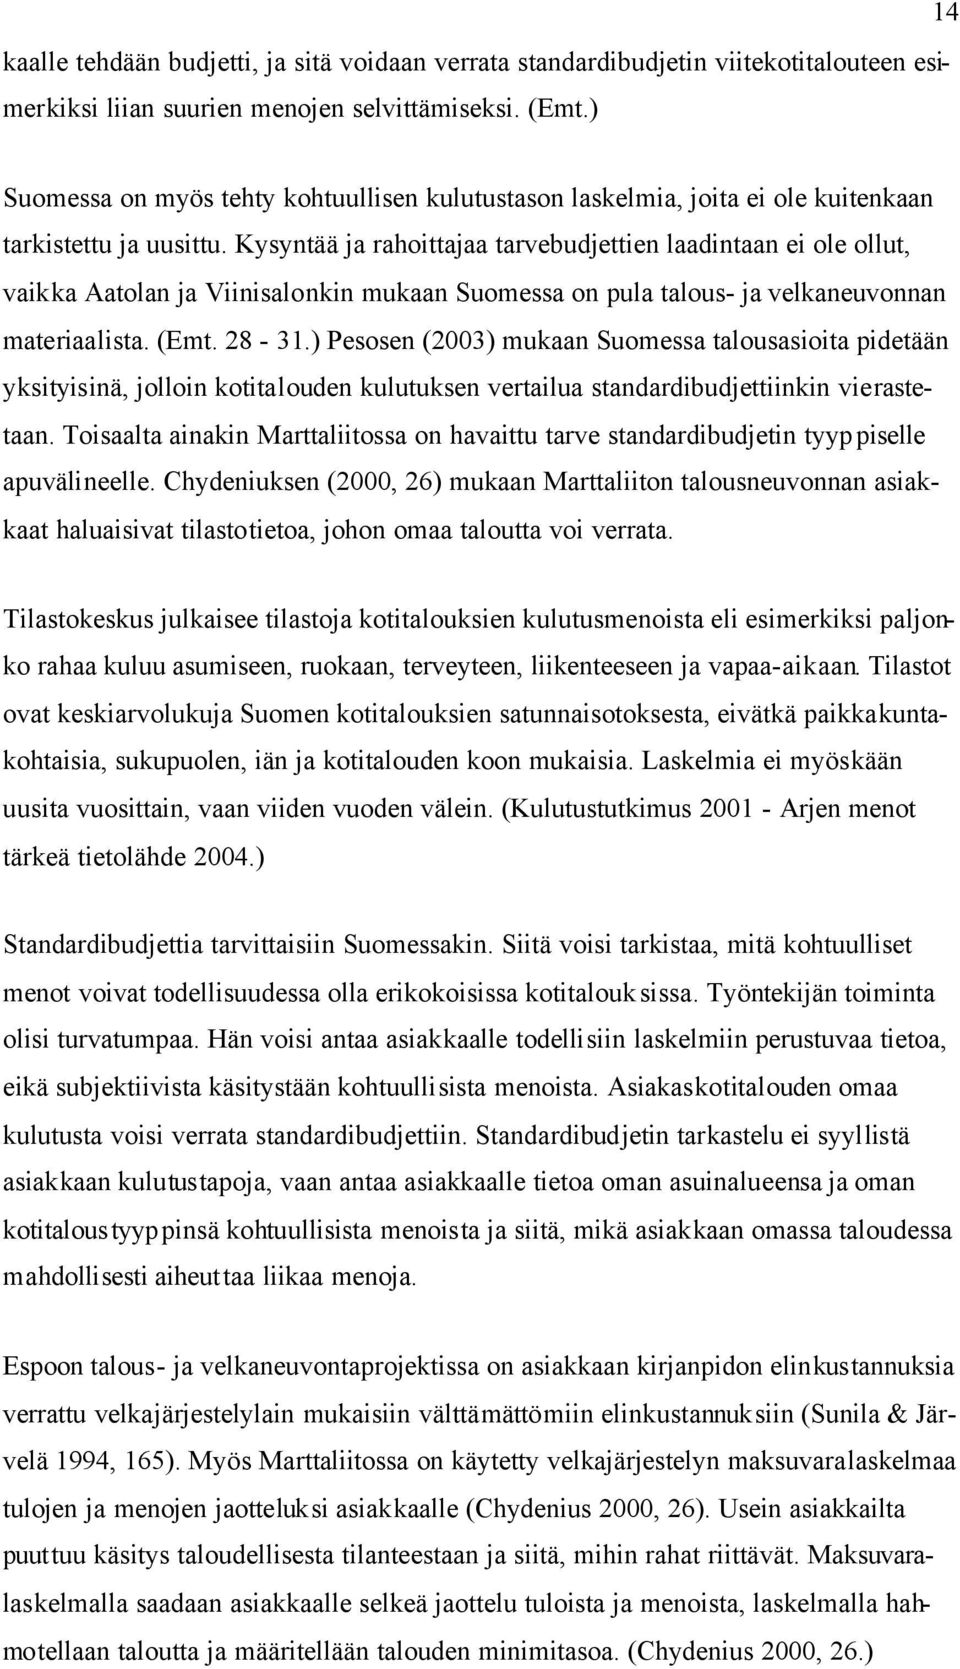 Kysyntää ja rahoittajaa tarvebudjettien laadintaan ei ole ollut, vaikka Aatolan ja Viinisalonkin mukaan Suomessa on pula talous- ja velkaneuvonnan materiaalista. (Emt. 28-31.